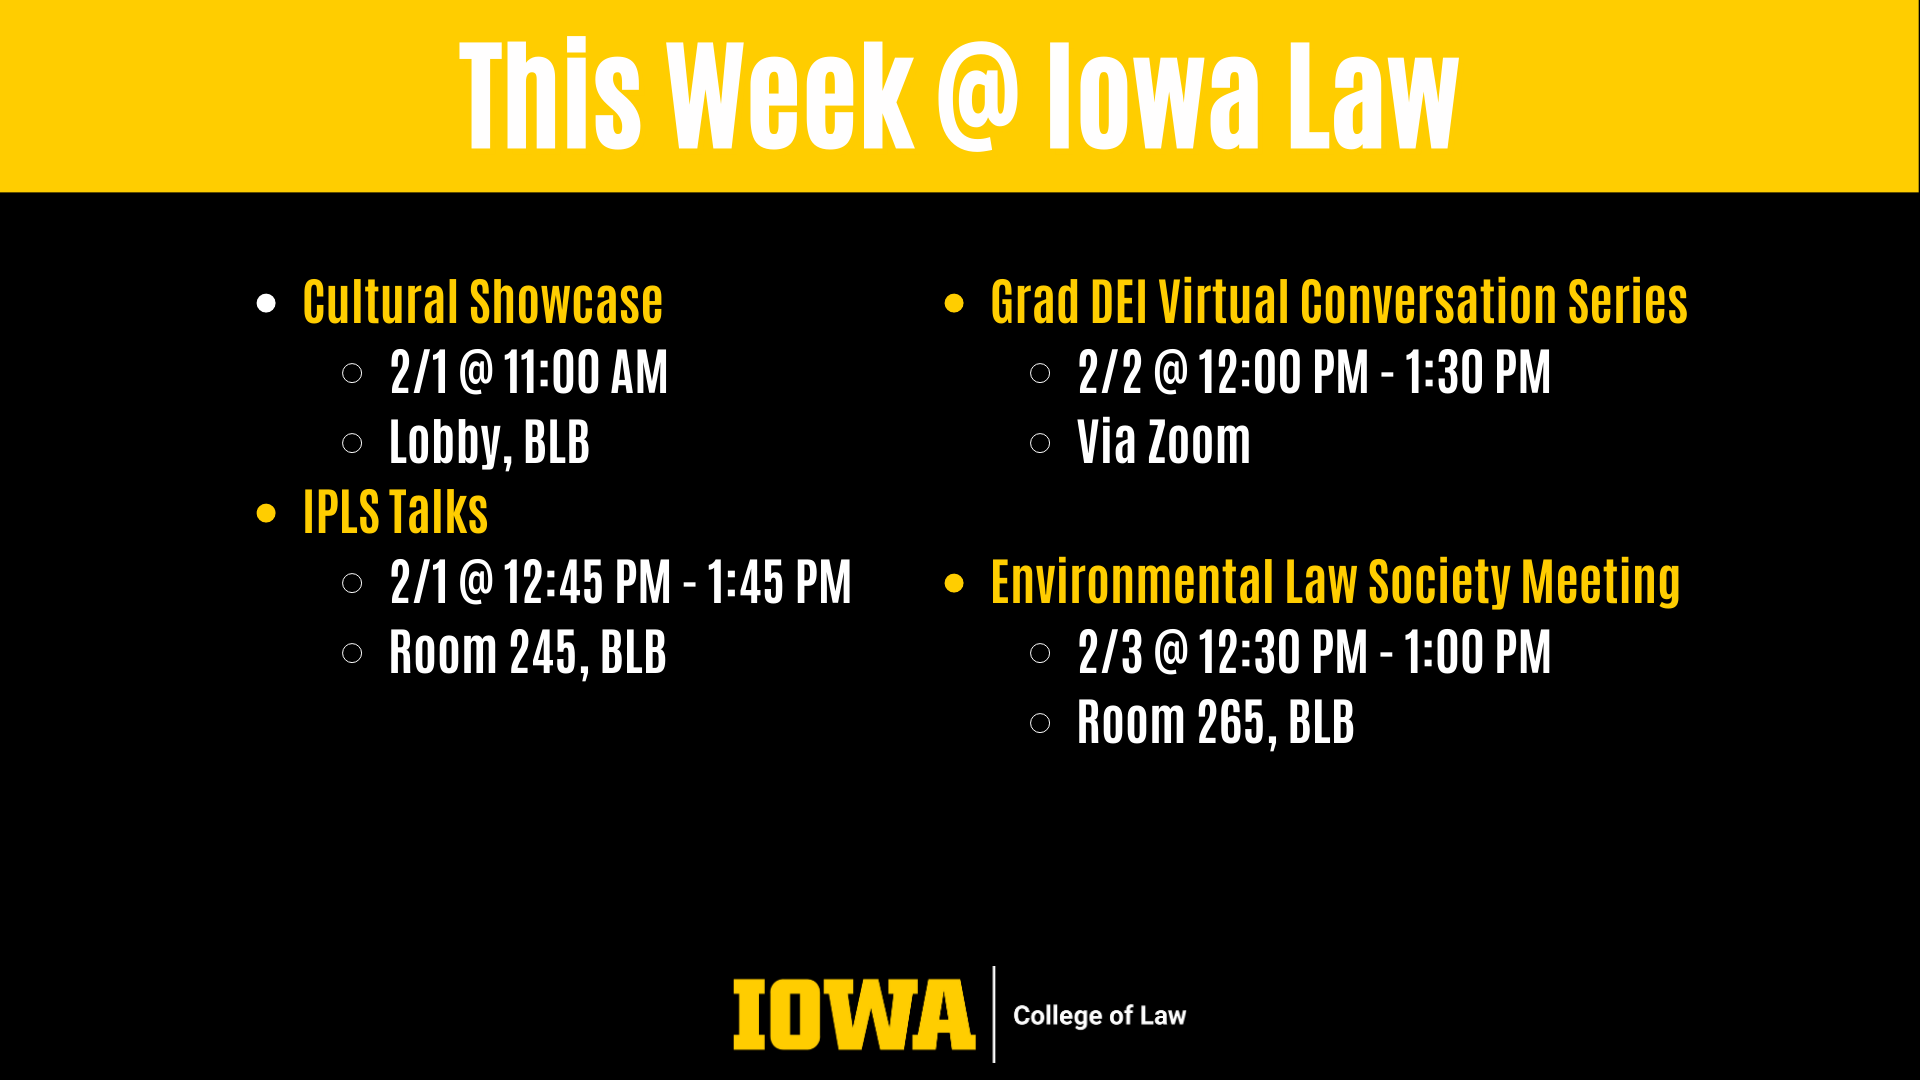 This Week @ Iowa Law: Cultural Showcase 2/1 @ 11:00 AM  Lobby, BLB IPLS Talks 2/1 @ 12:45 PM - 1:45 PM  Room 245, BLB Grad DEI Virtual Conversation Series 2/2 @ 12:00 PM - 1:30 PM  Via Zoom  Environmental Law Society Meeting  2/3 @ 12:30 PM - 1:00 PM Room 265, BLB